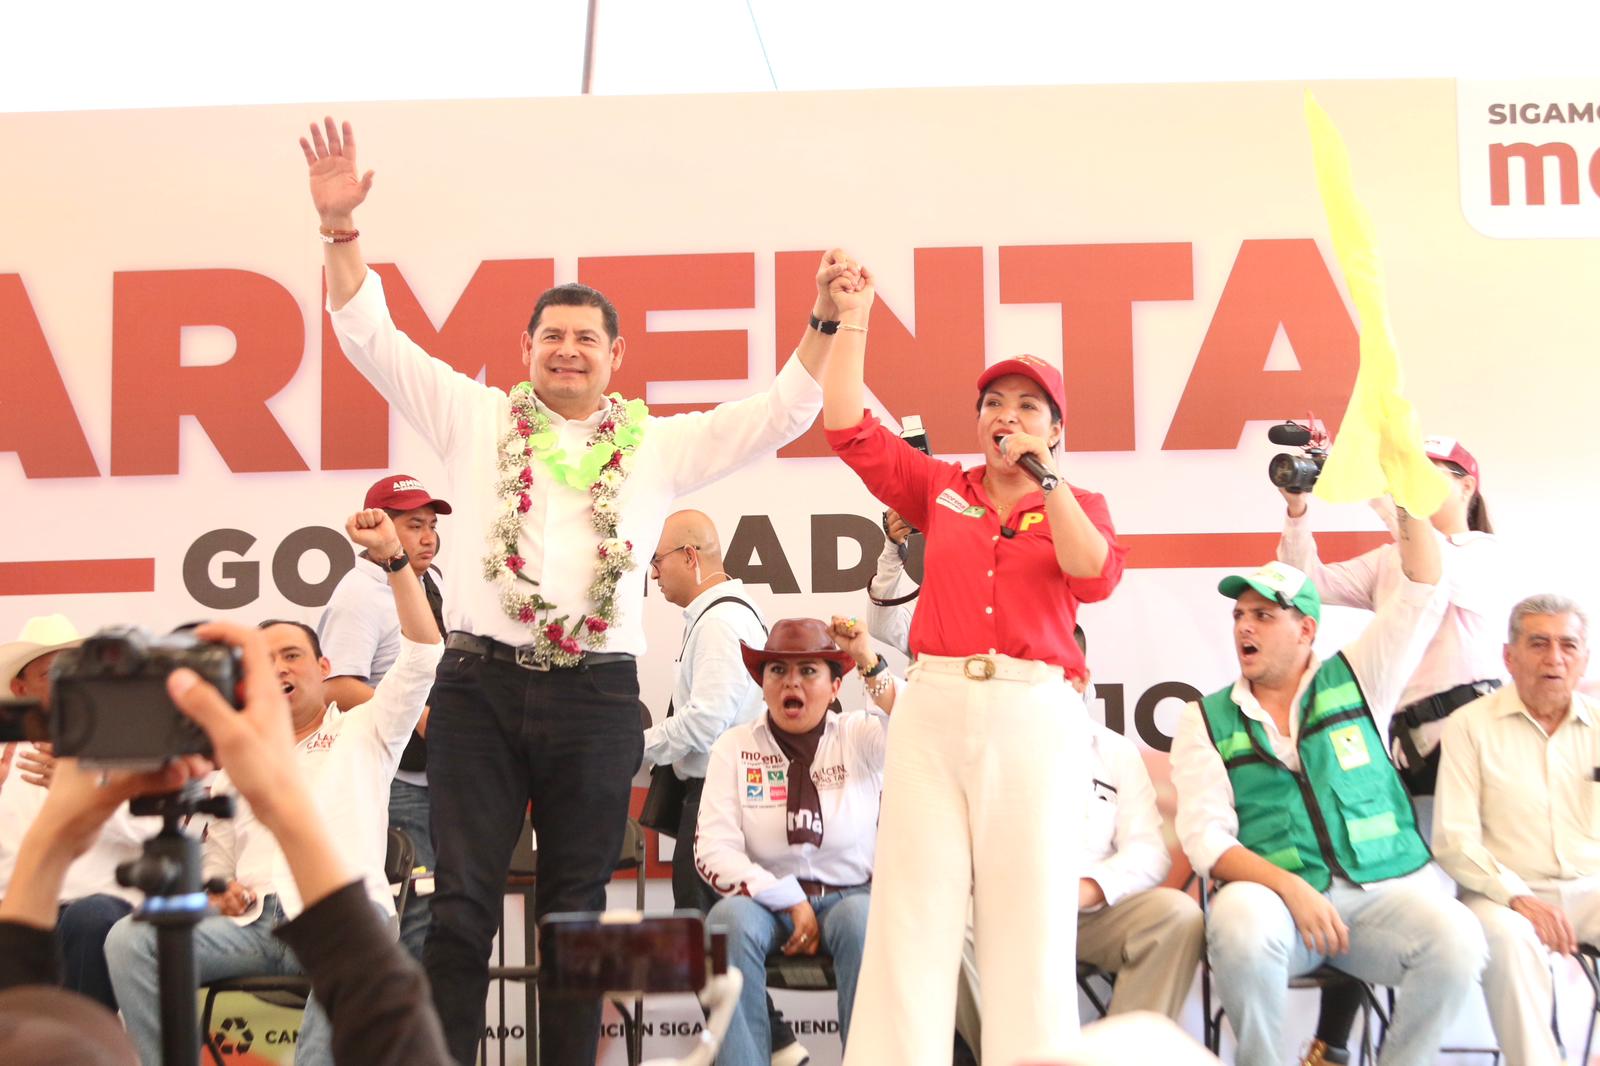 “No vamos a permitir que vuelva la corrupción”, afirma Liz Sánchez